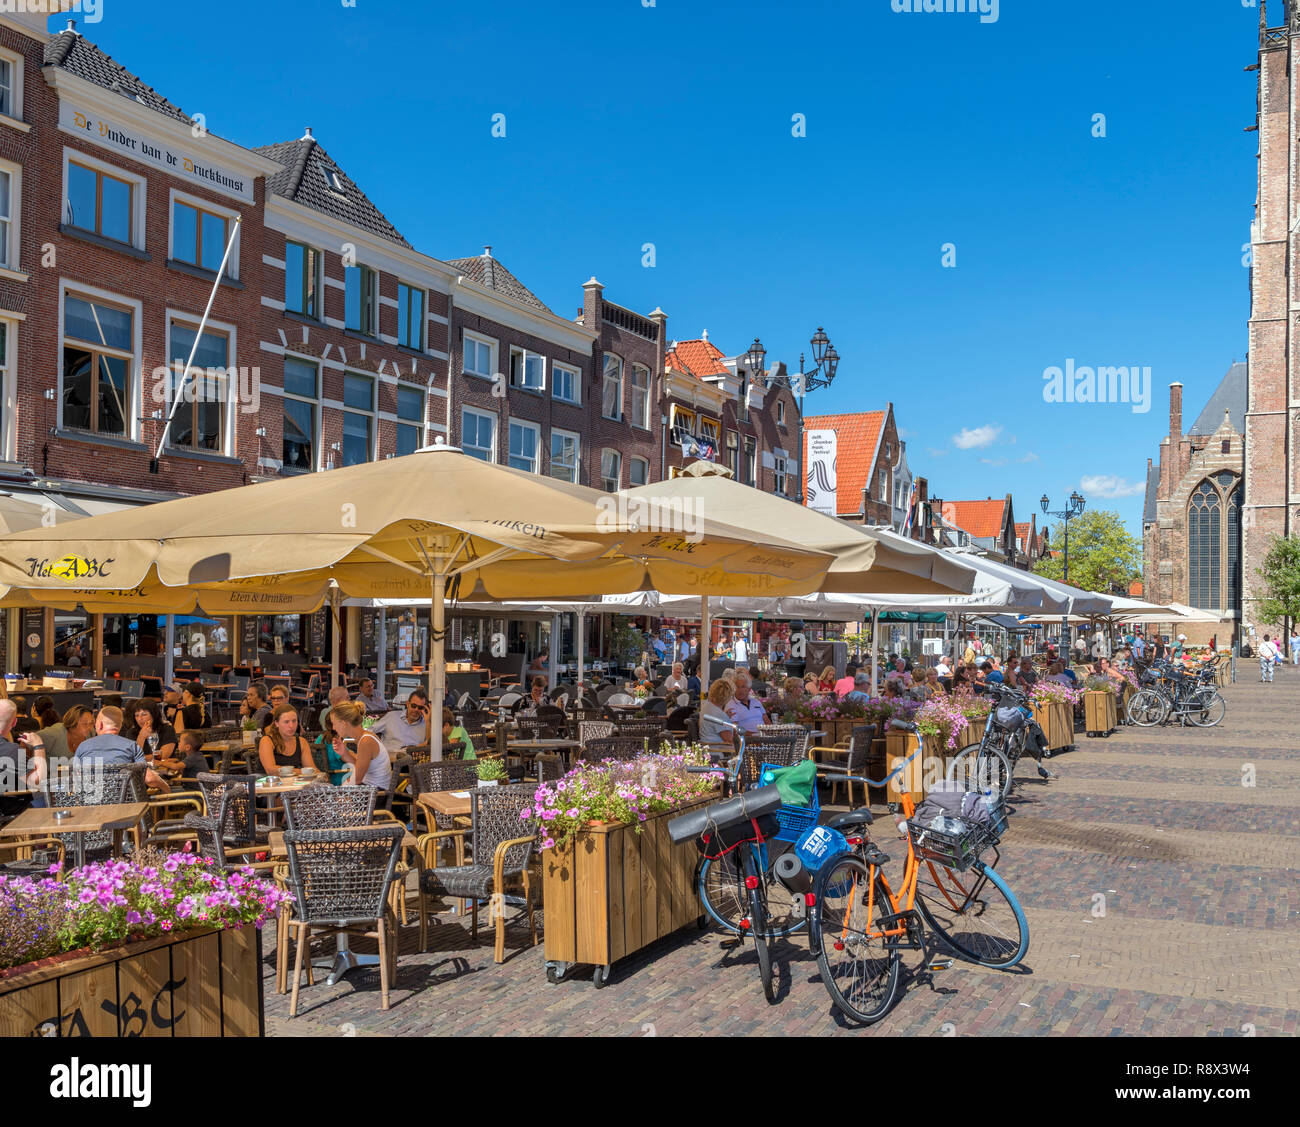 Des terrasses de cafés dans le Markt (place du marché), Delft, Zuid-Holland (Hollande méridionale), Pays-Bas Banque D'Images